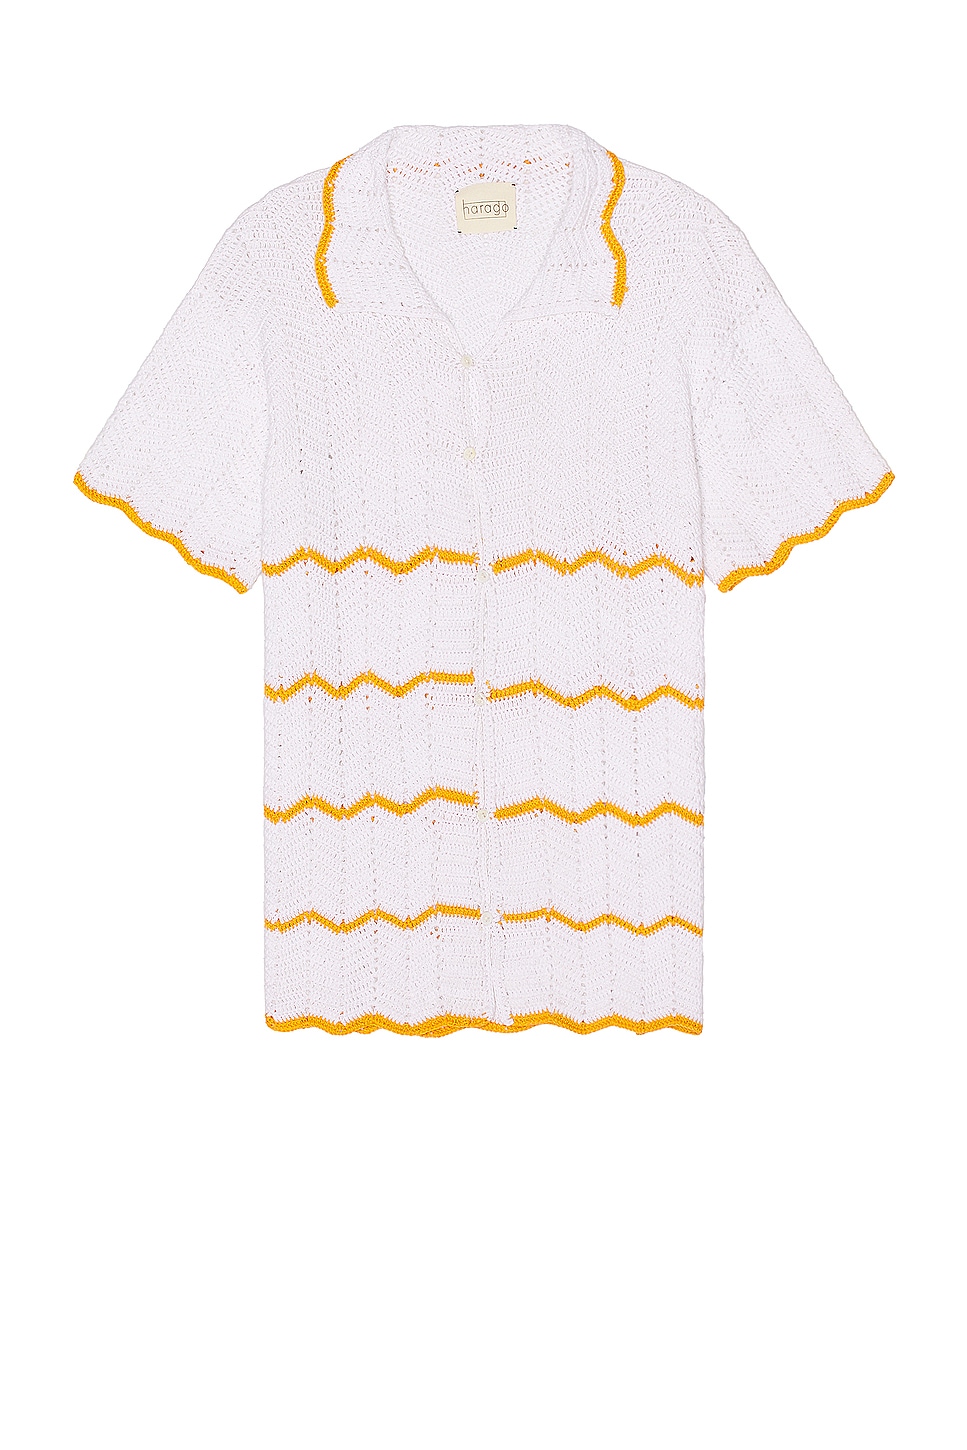 Image 1 of HARAGO Crochet Short Sleeve Shirt in White